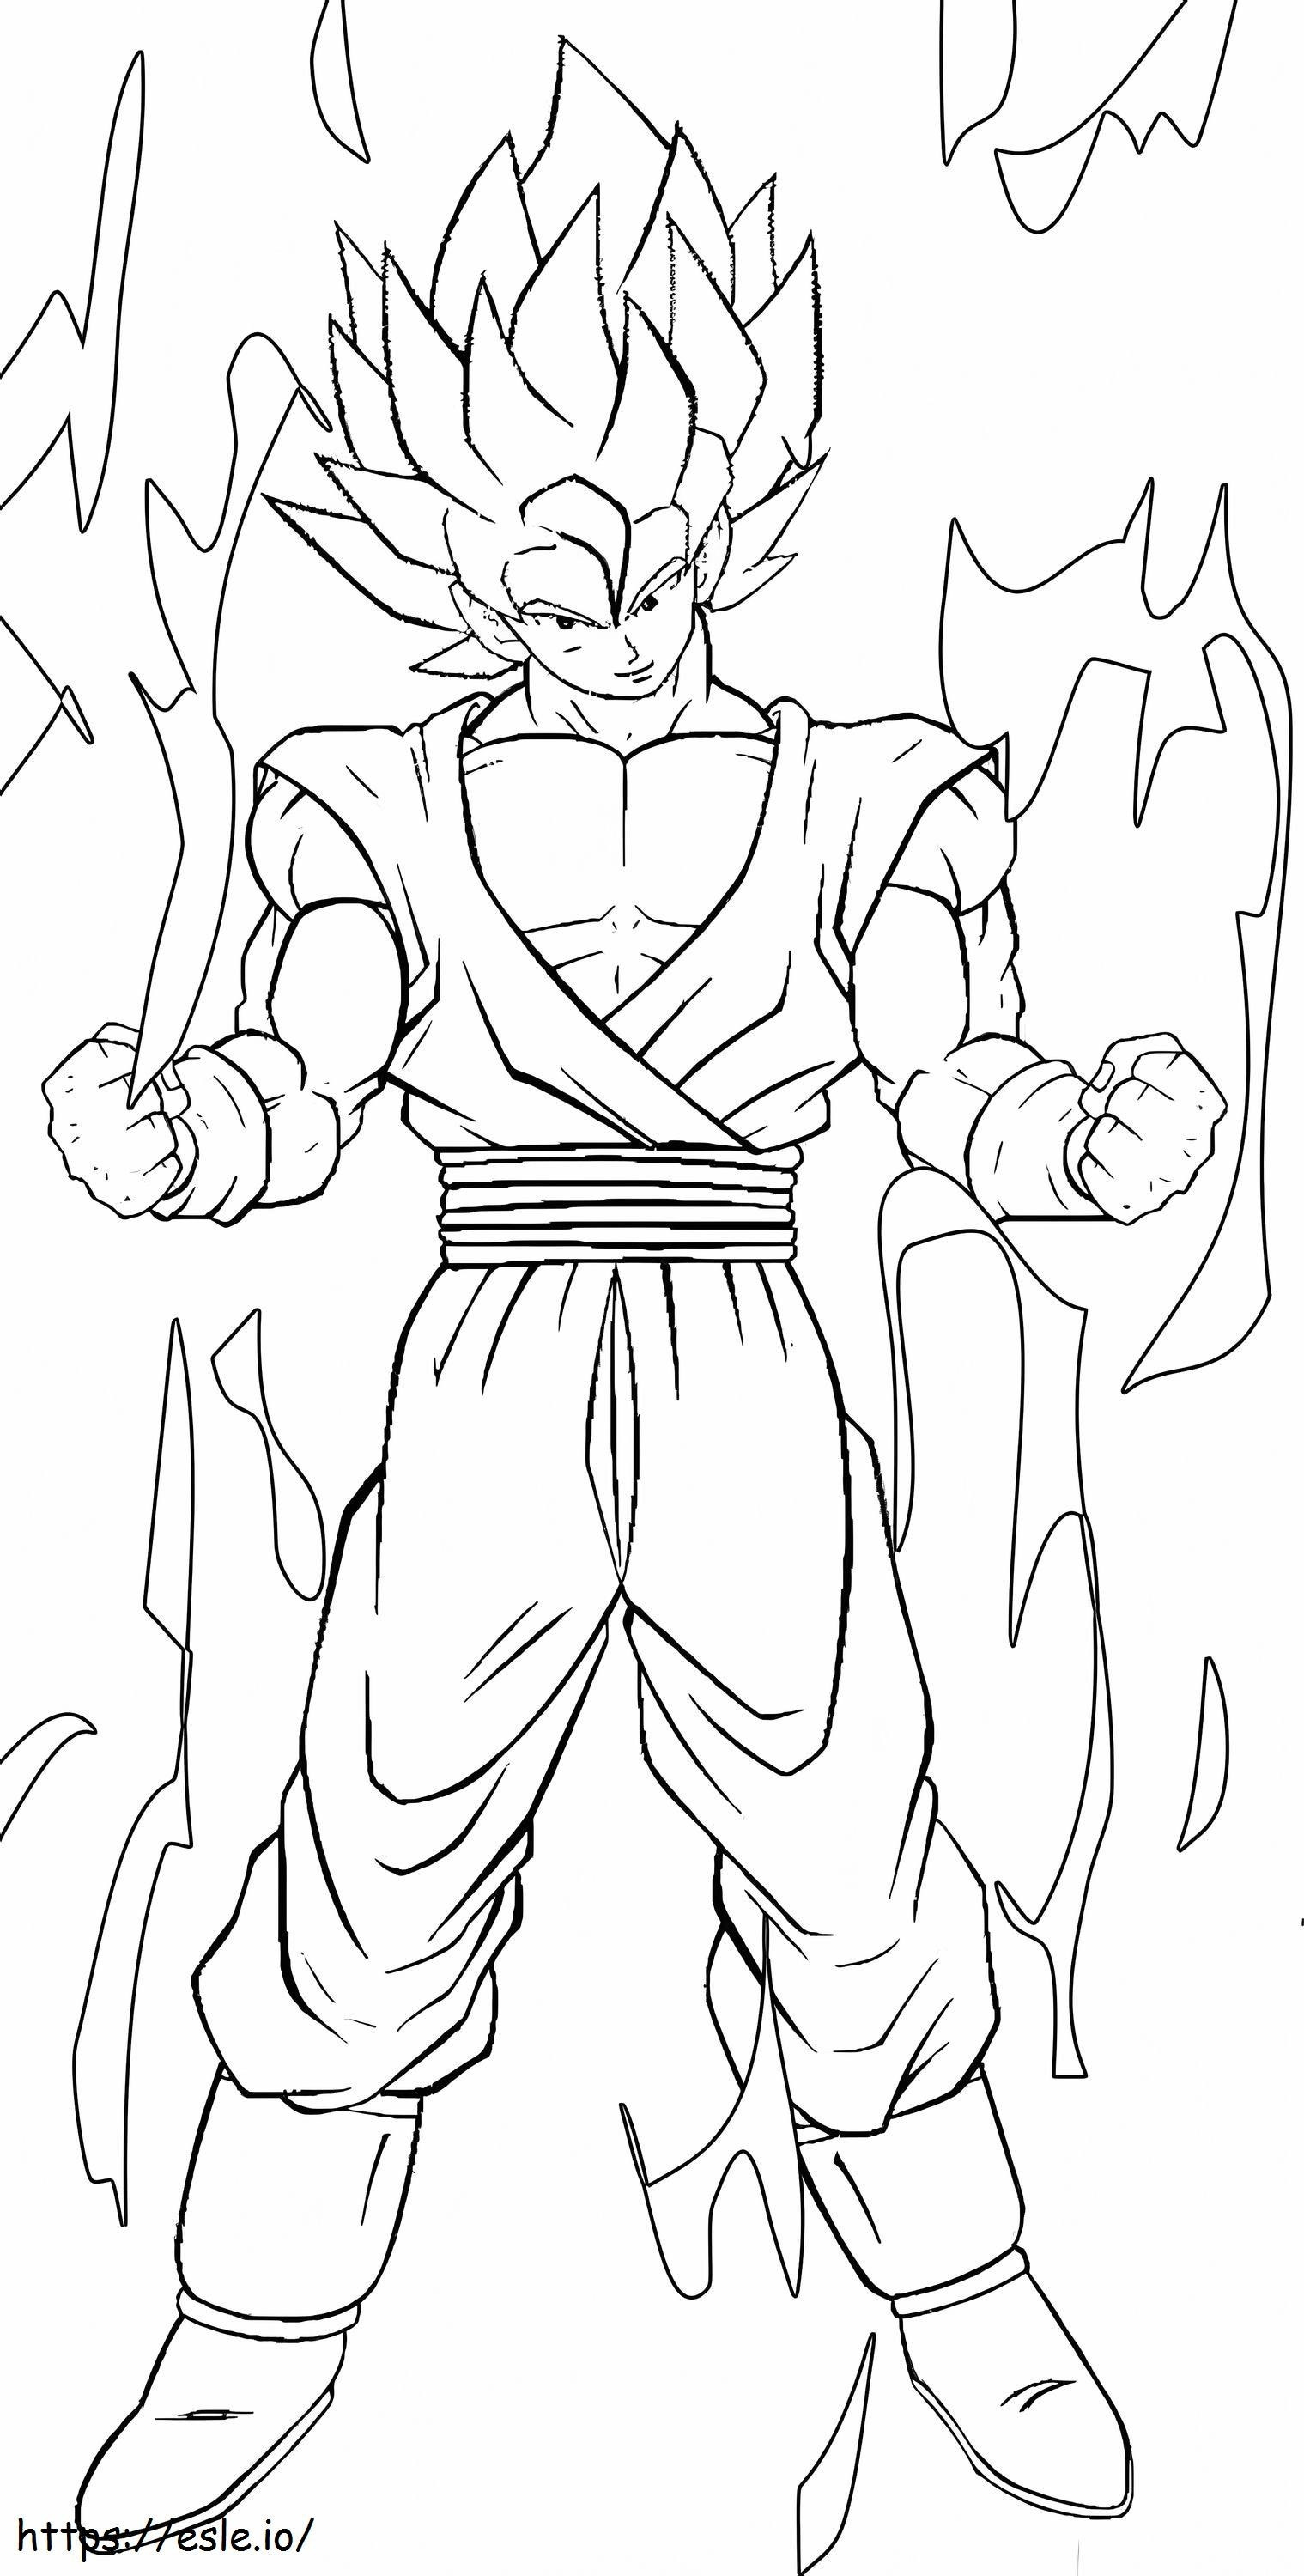 Zeichnung von Goku SSj1 ausmalbilder